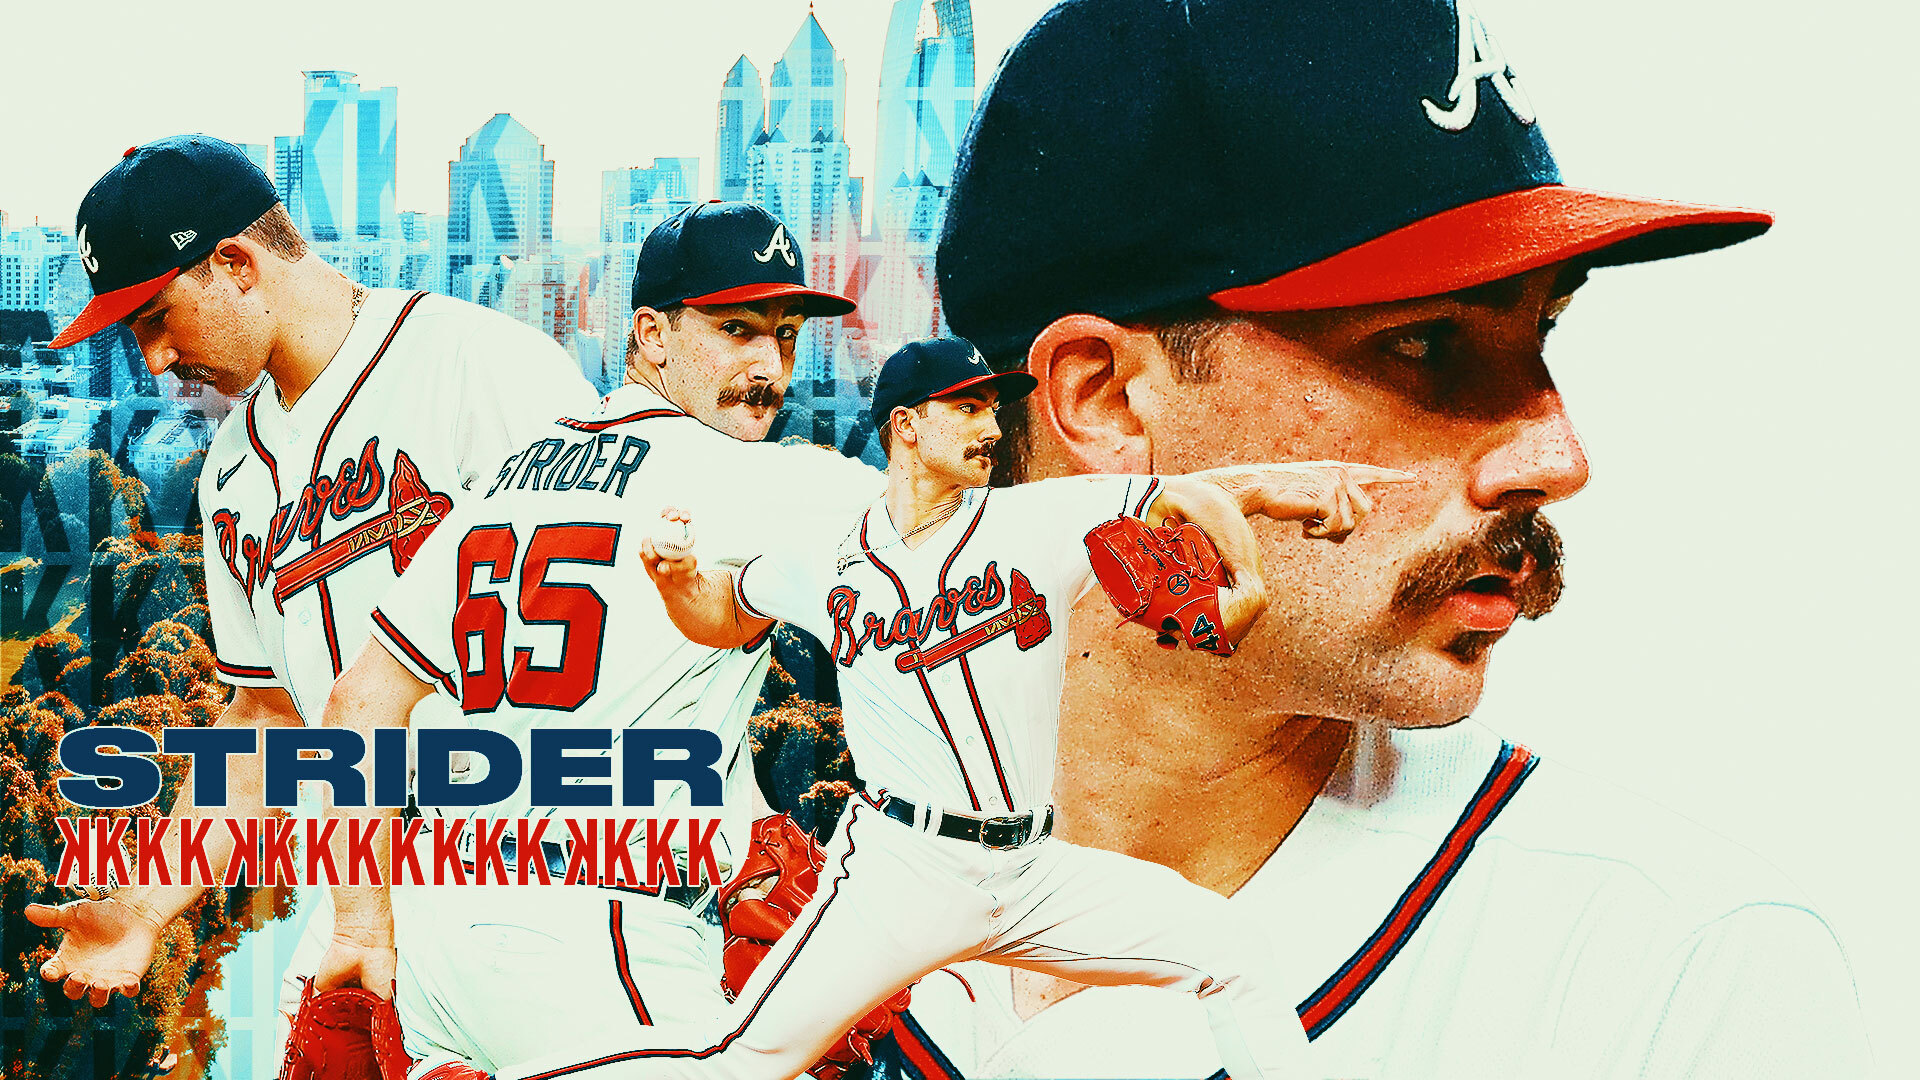 Wallpaper wallpaper, sport, logo, baseball, Atlanta Braves for